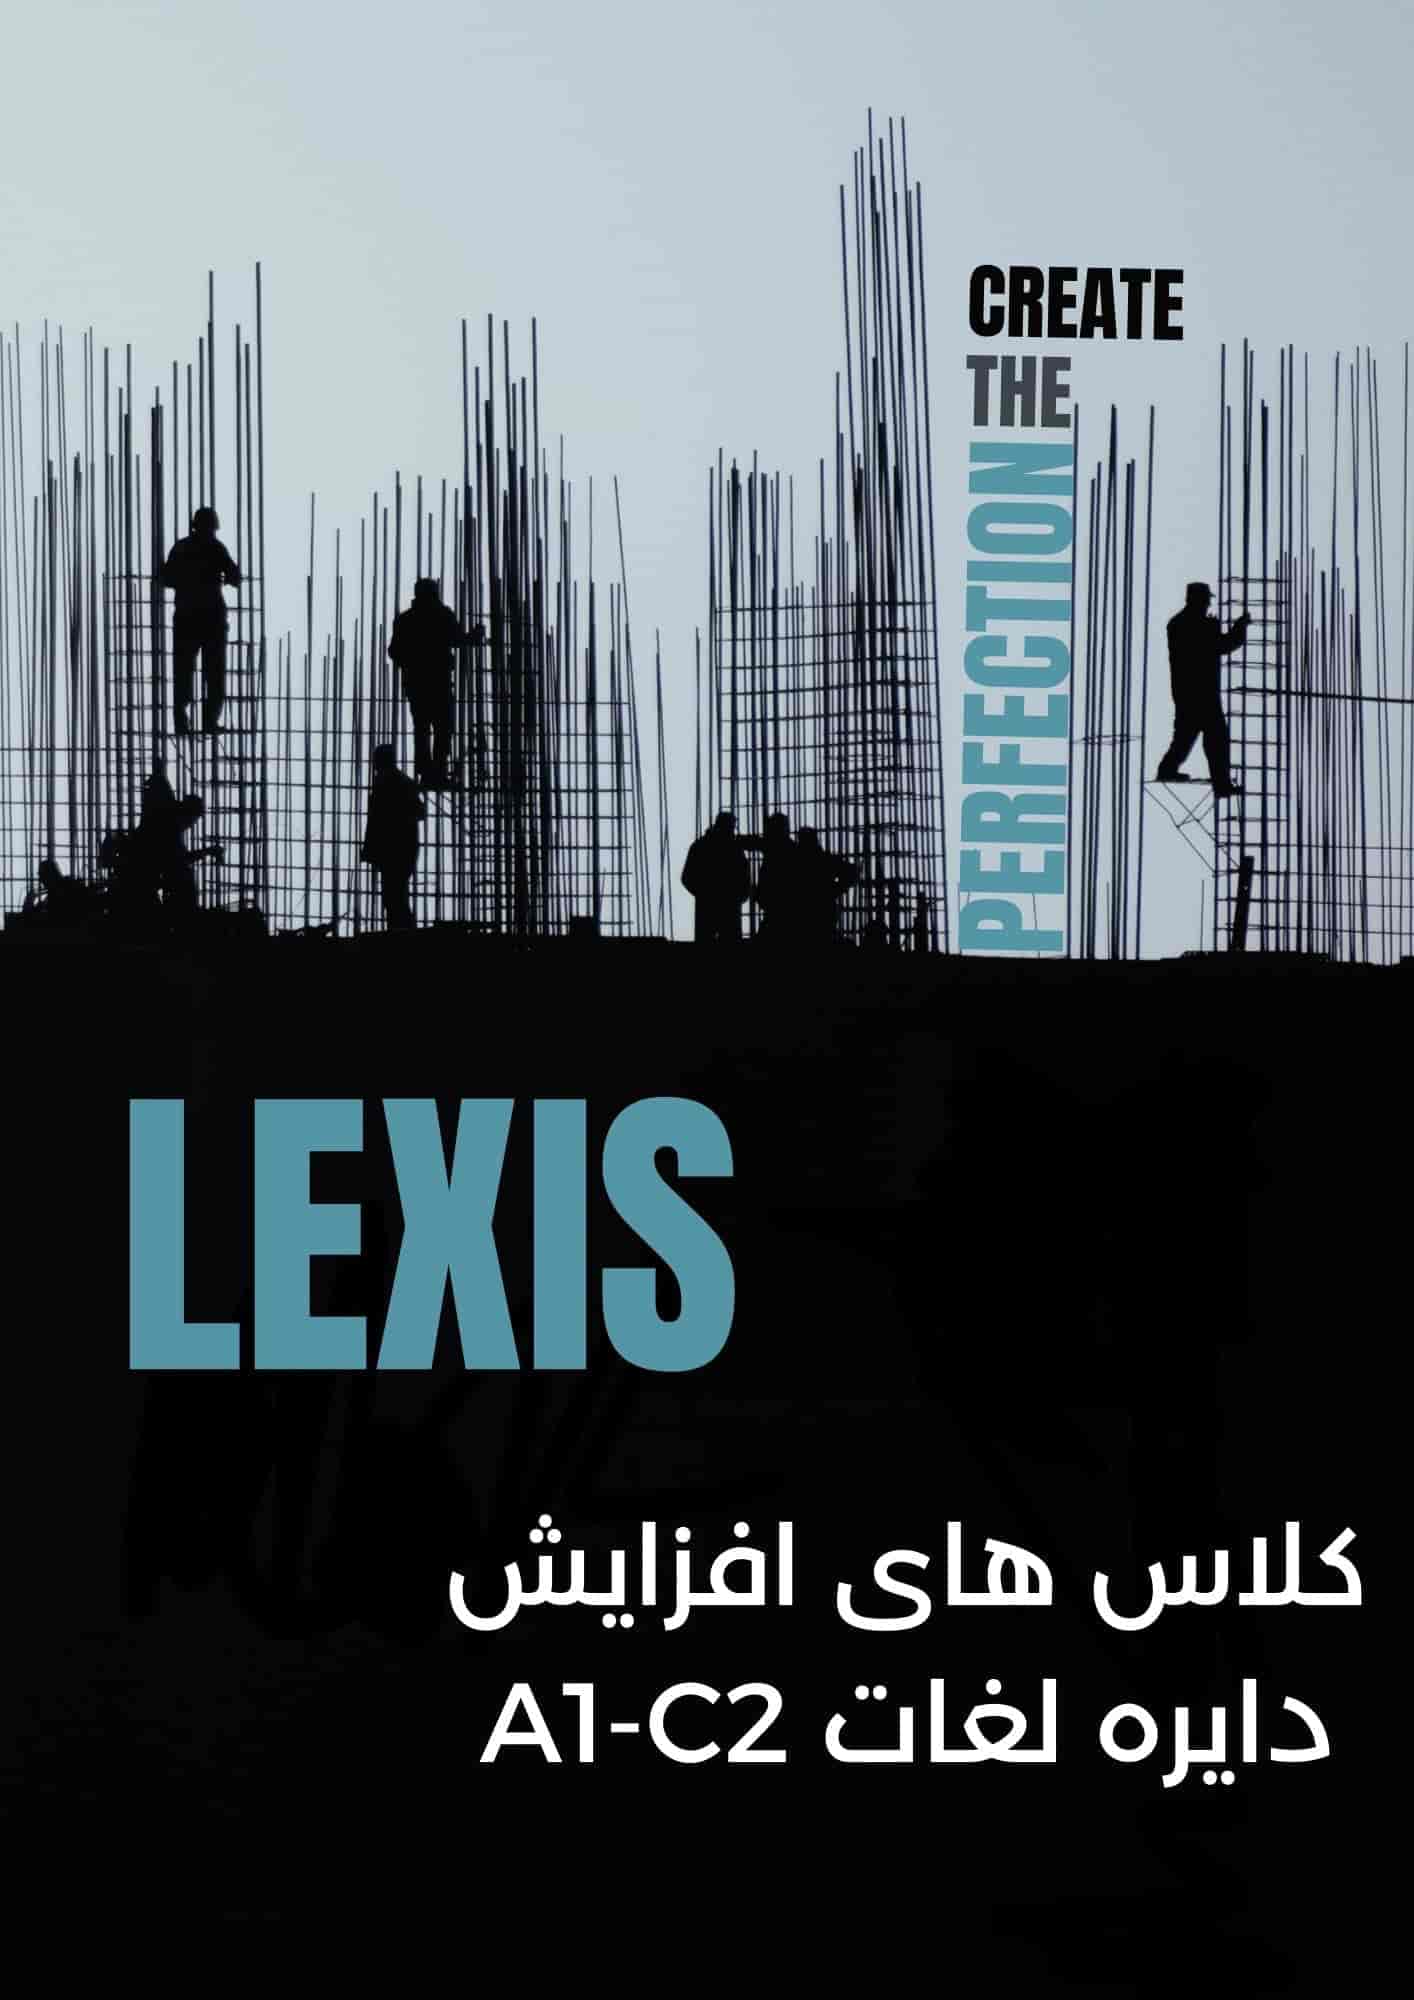 Lexis Ad